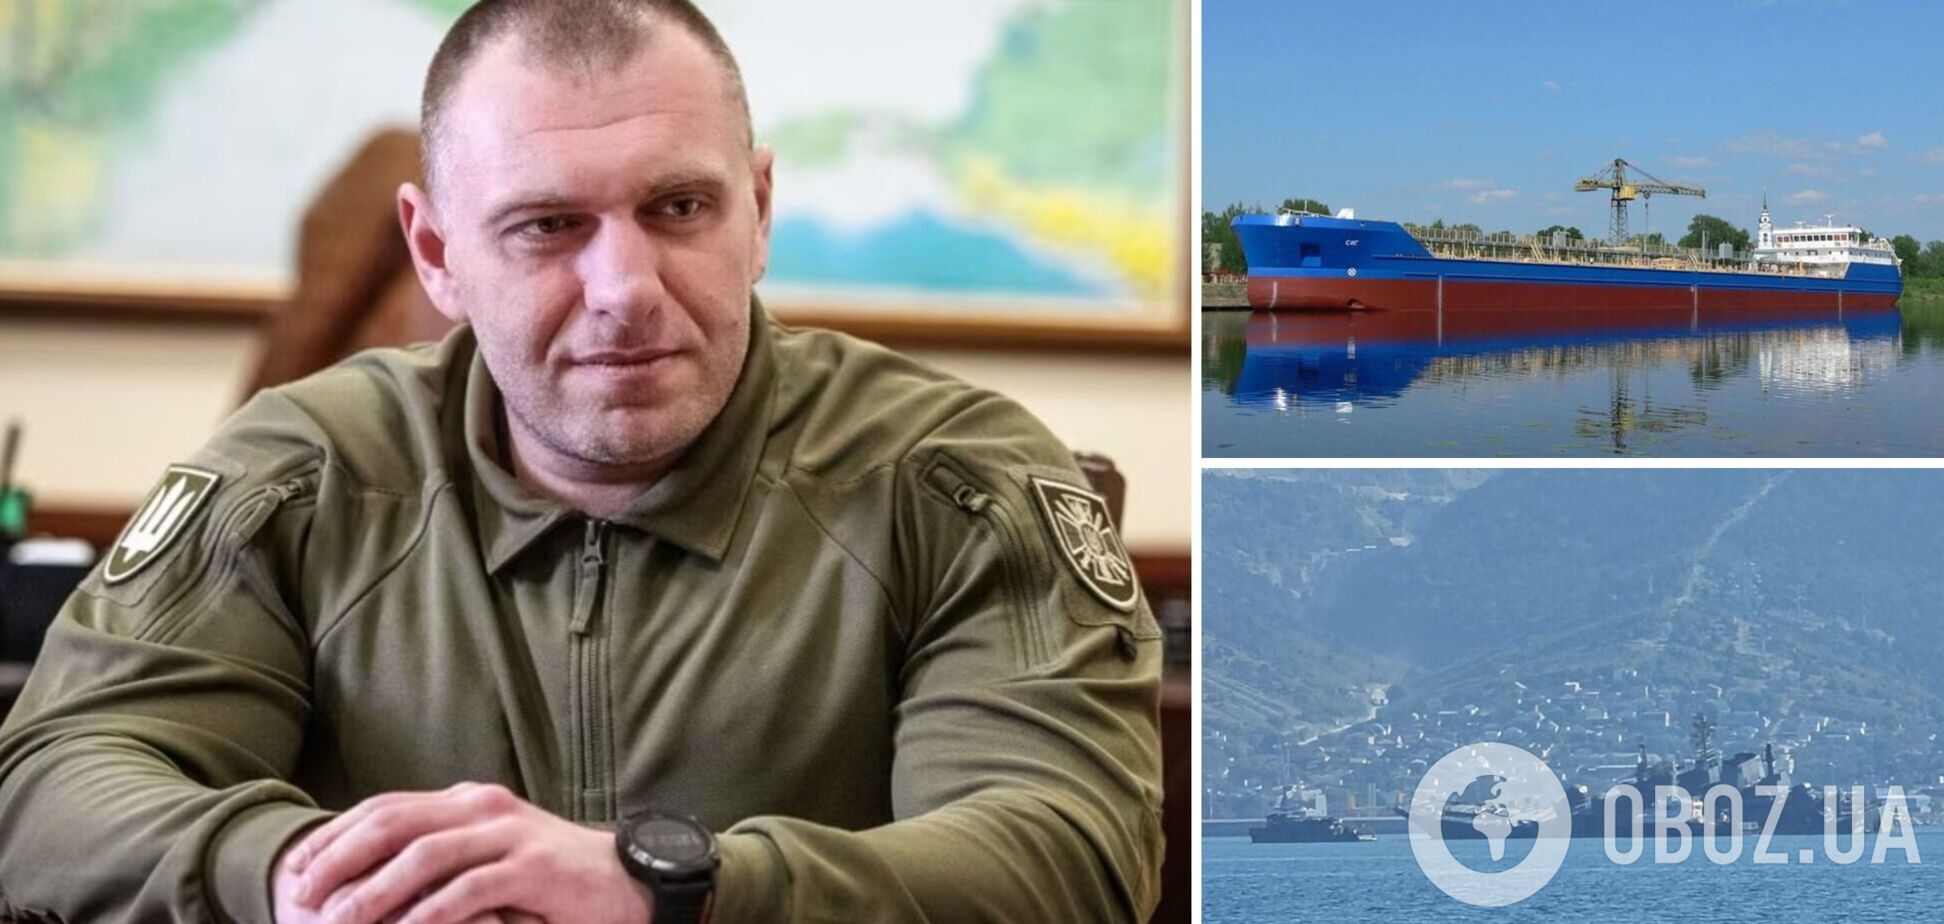 Голова СБУ Малюк про атаки на кораблі РФ та Кримський міст: все логічно і законно, нехай забираються